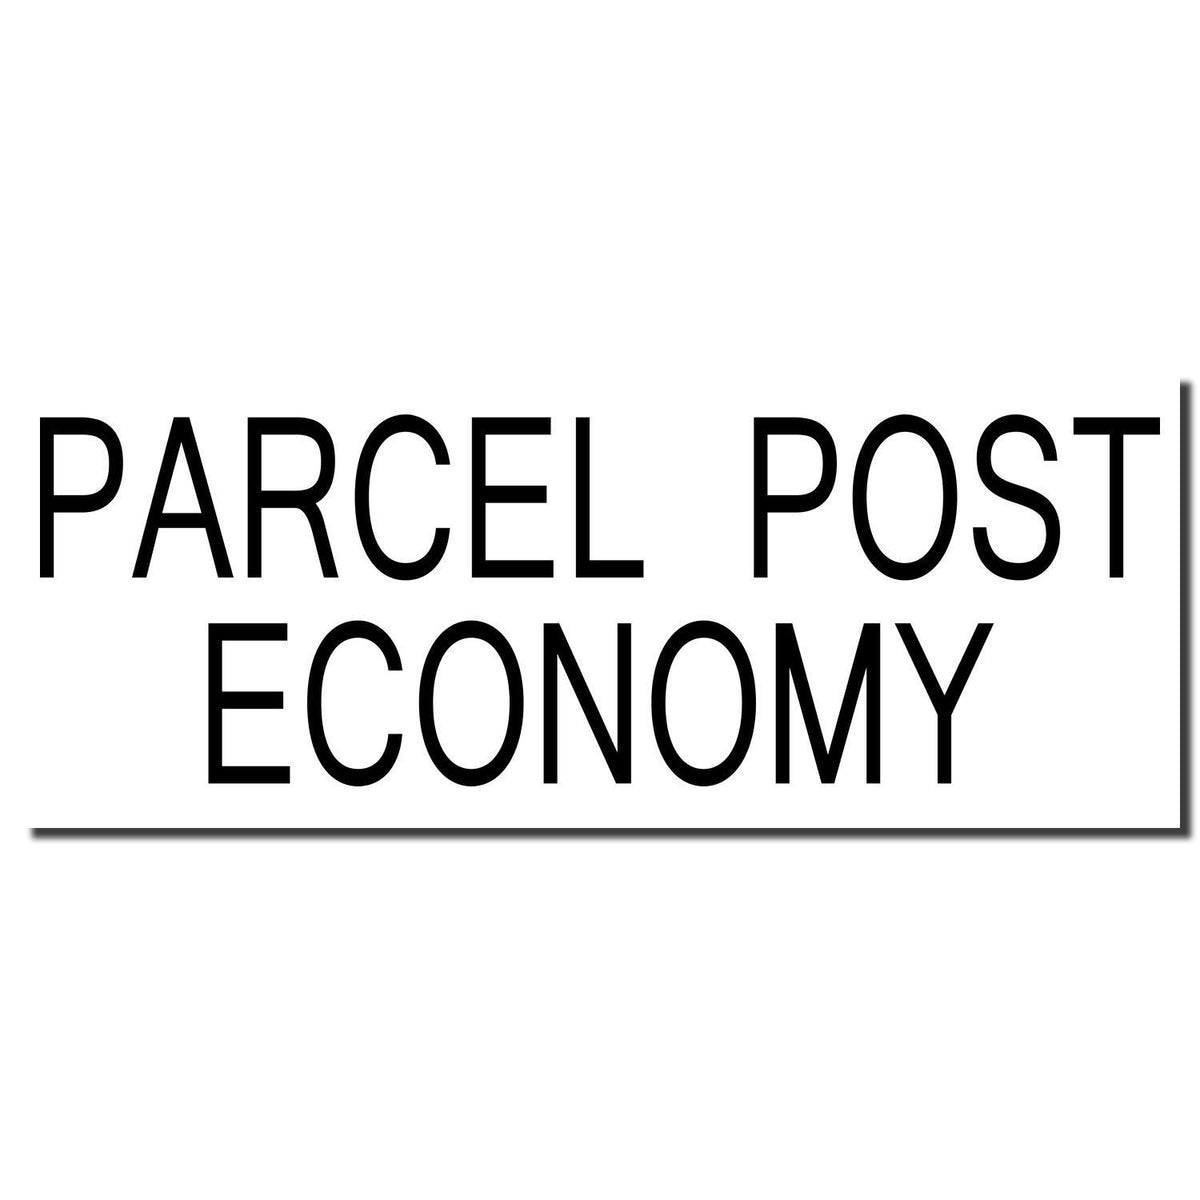 Enlarged Imprint Large Parcel Post Economy Rubber Stamp Sample